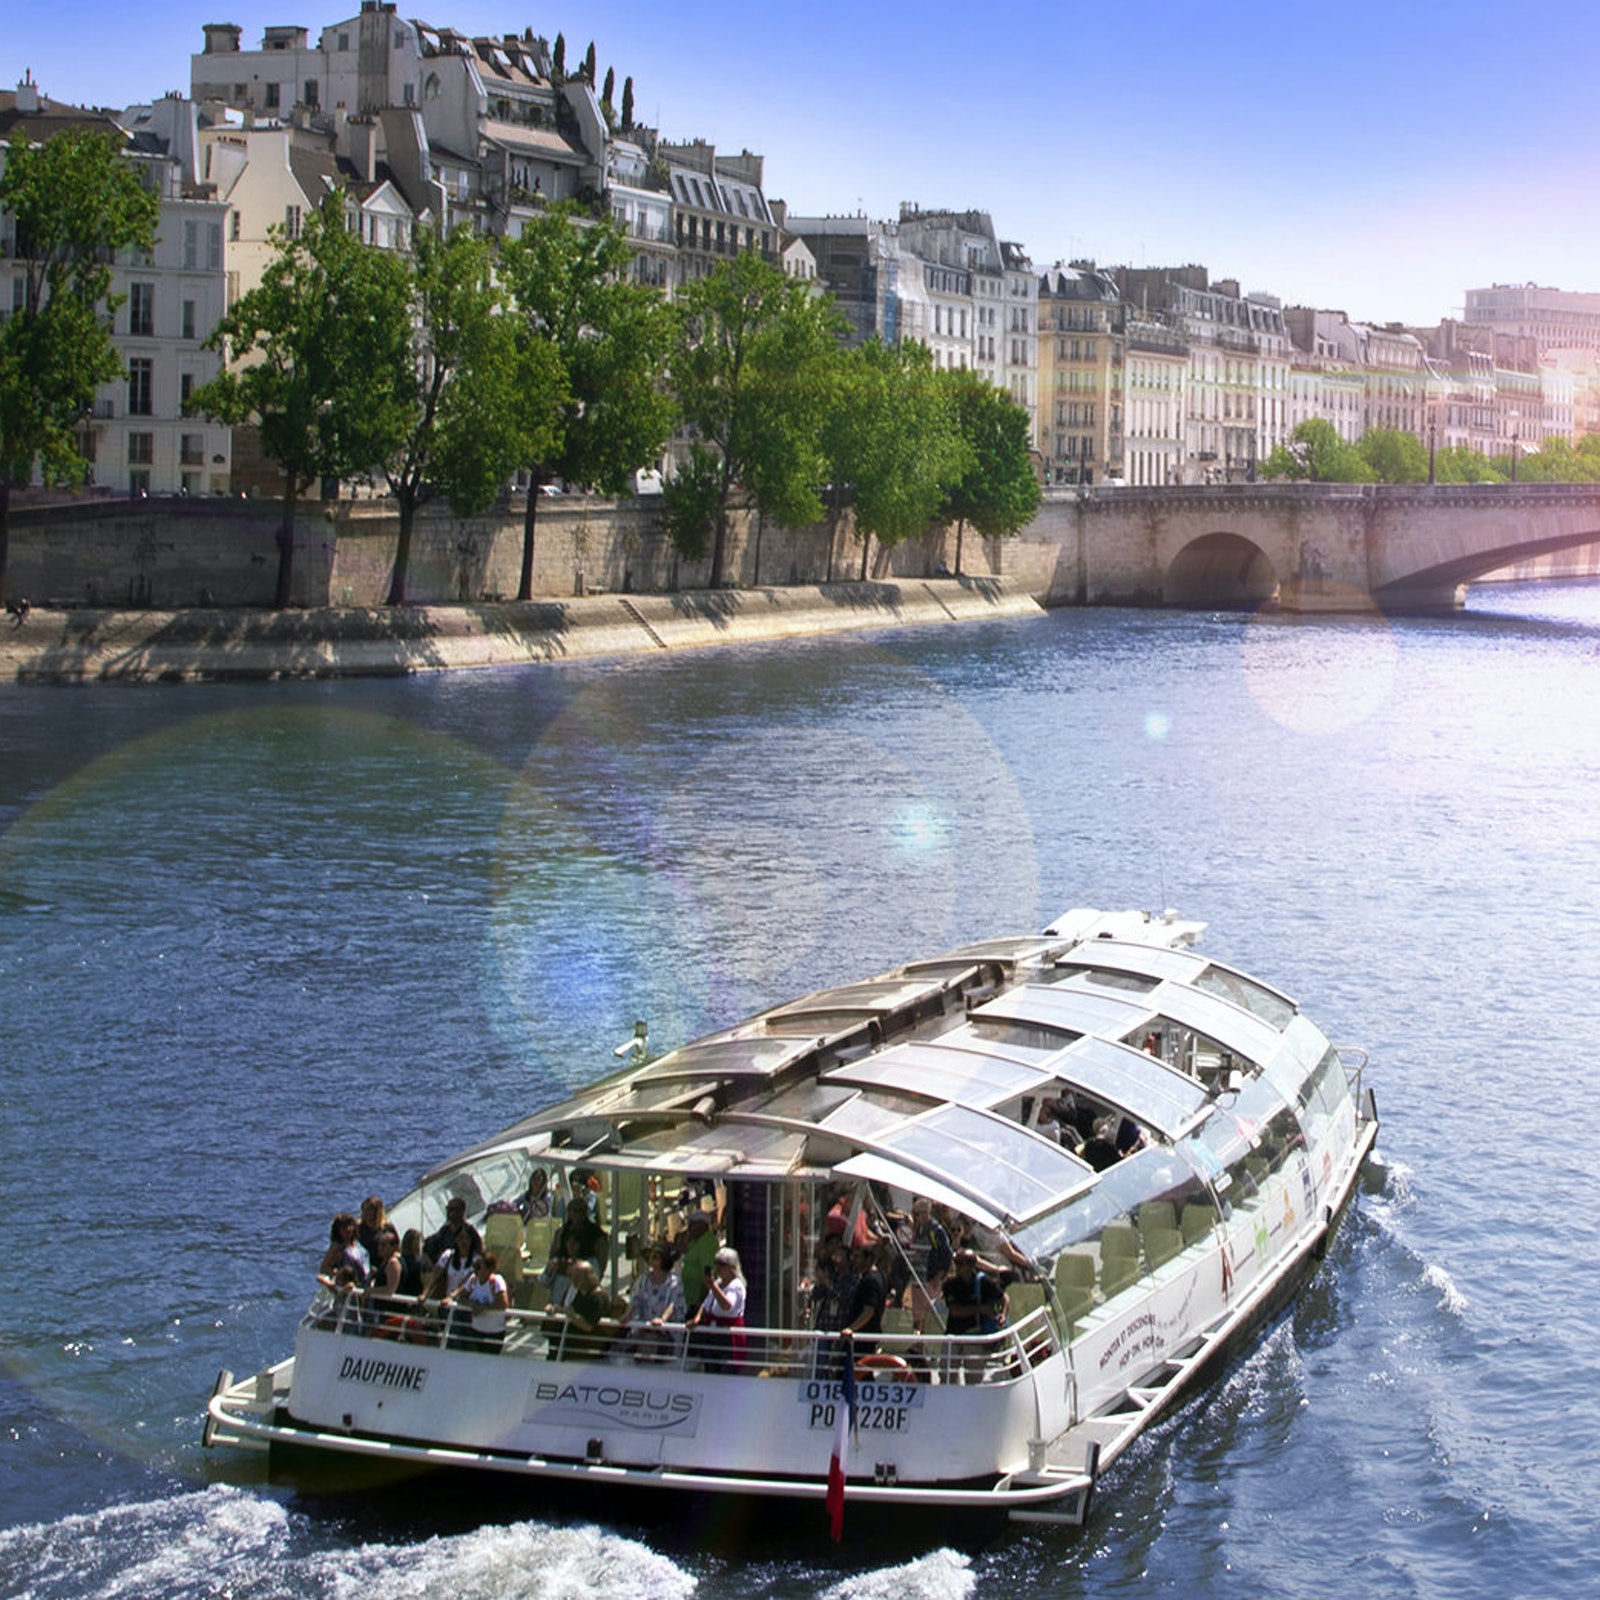 Batobus - River-Boat Shuttle Service in France